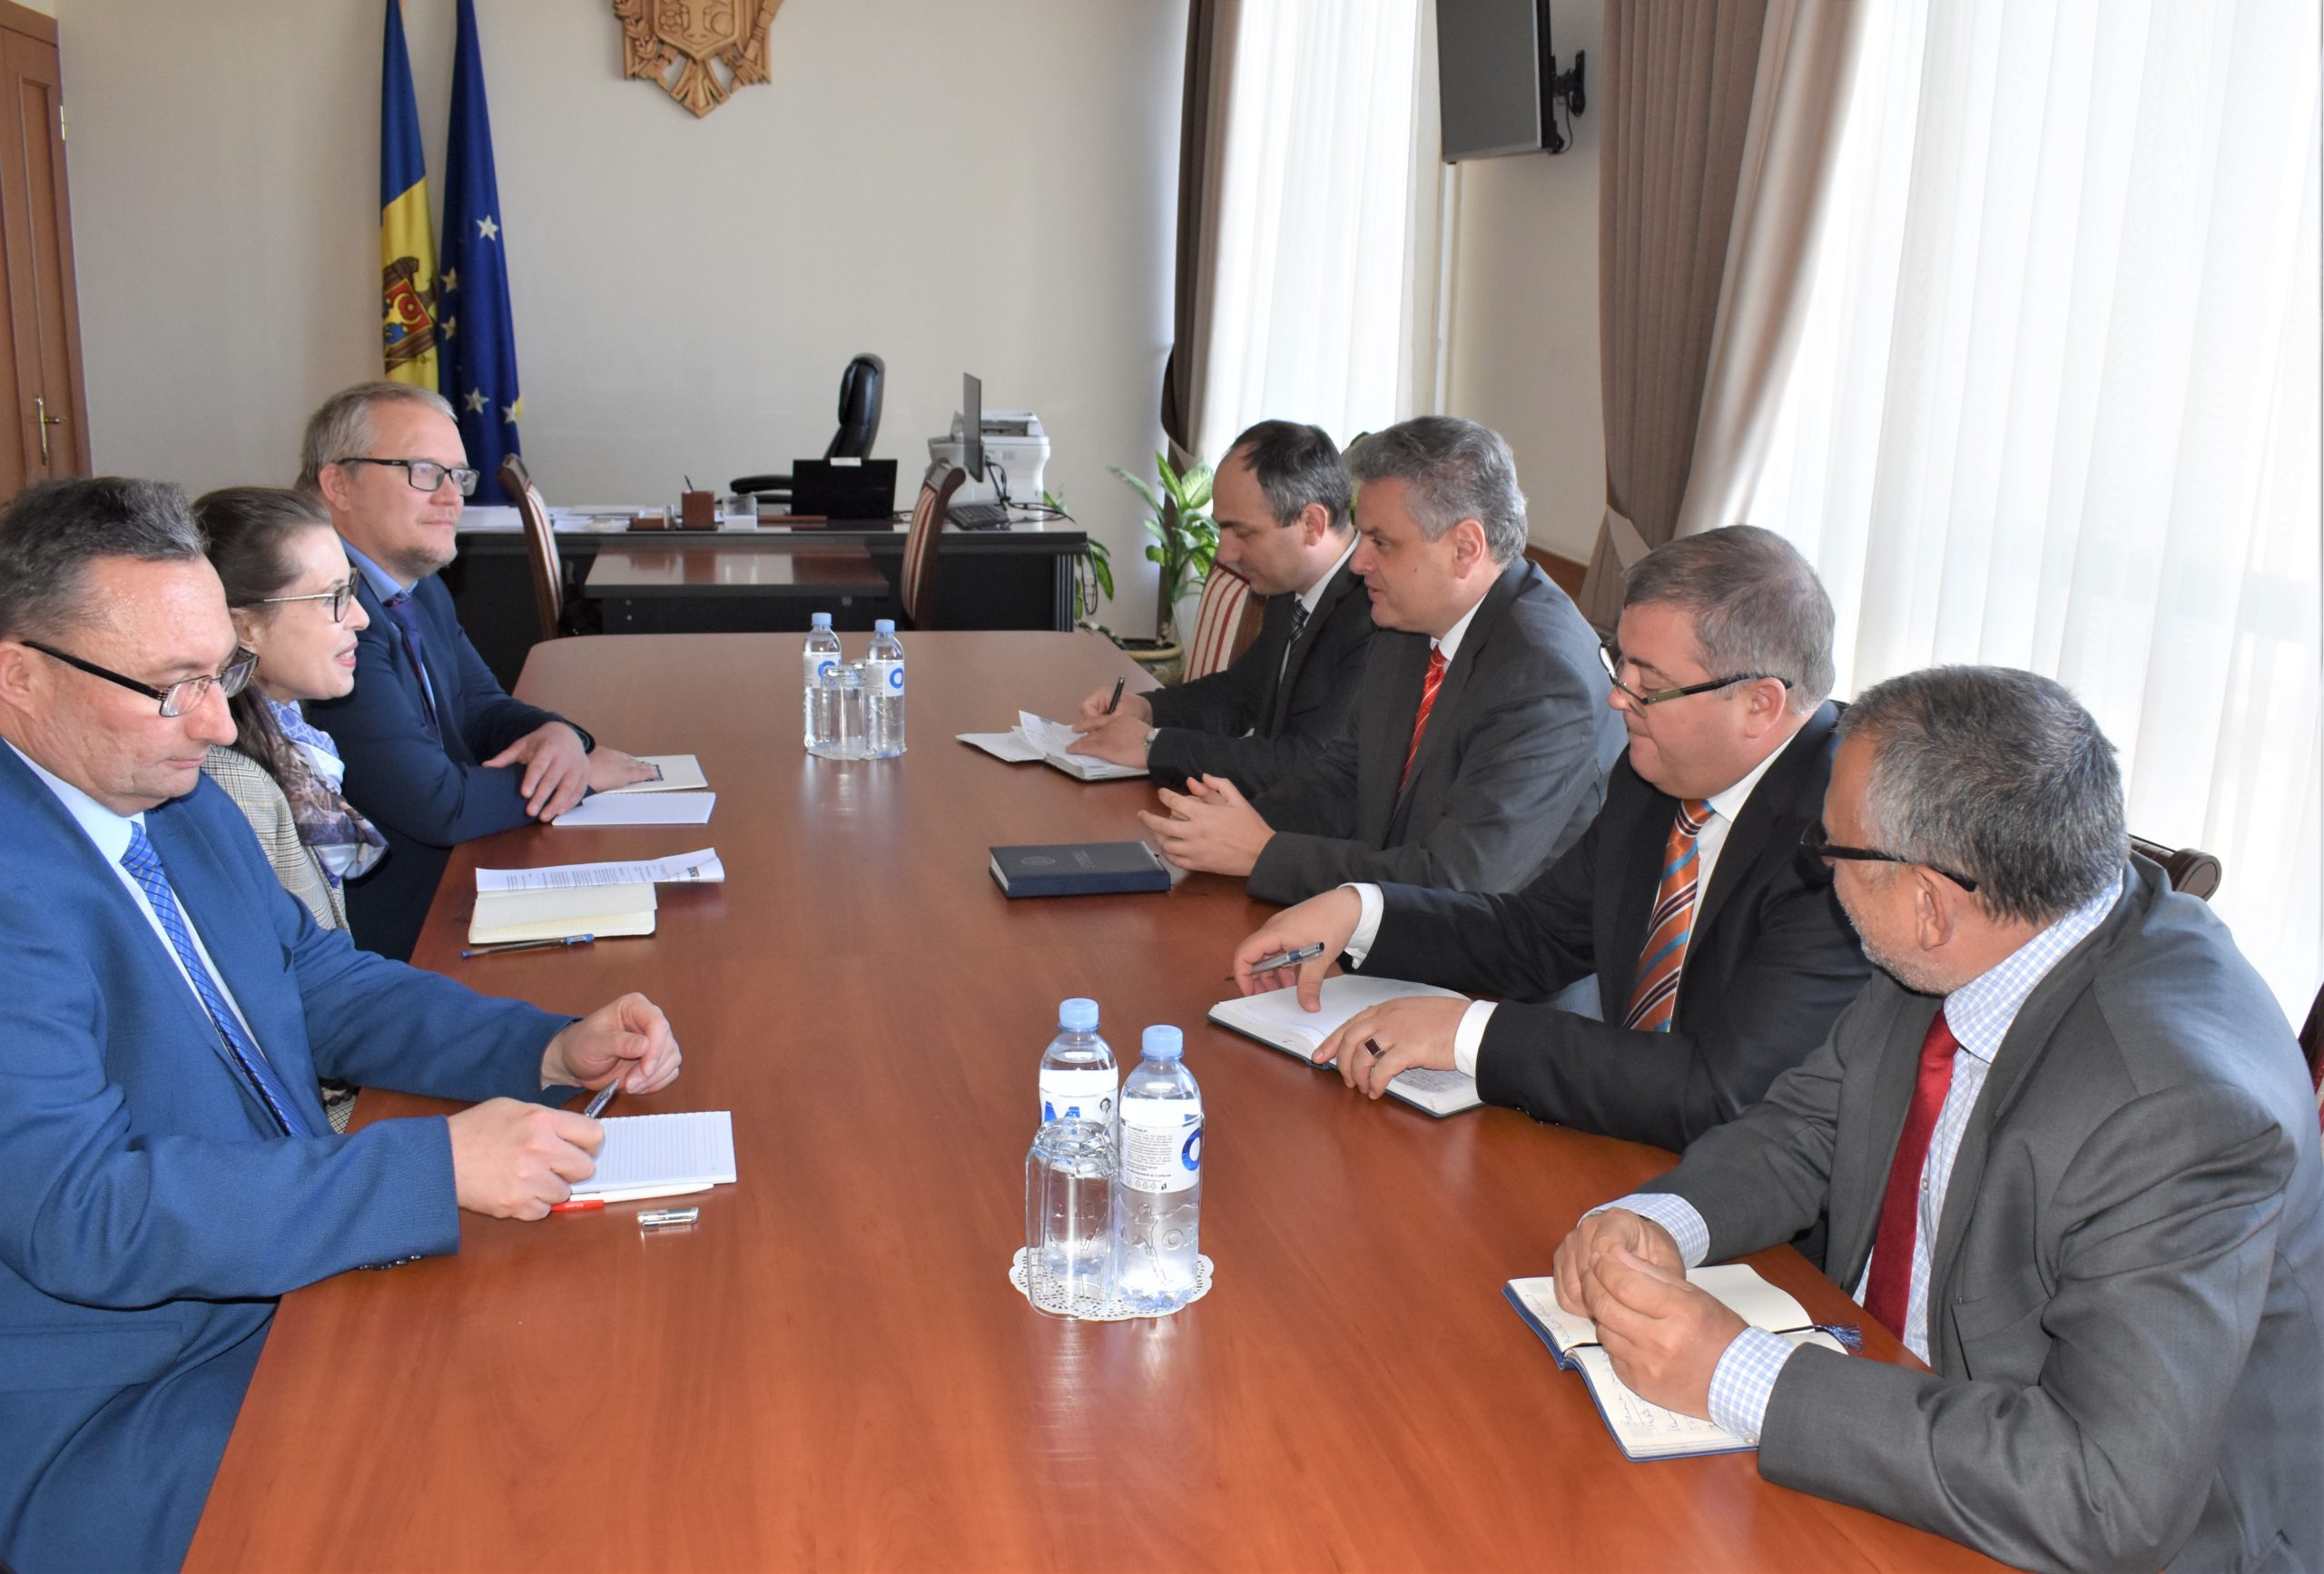 Гаврилица и Серебрян обсудили ситуацию в Приднестровье с новой главой миссии ОБСЕ в Молдове